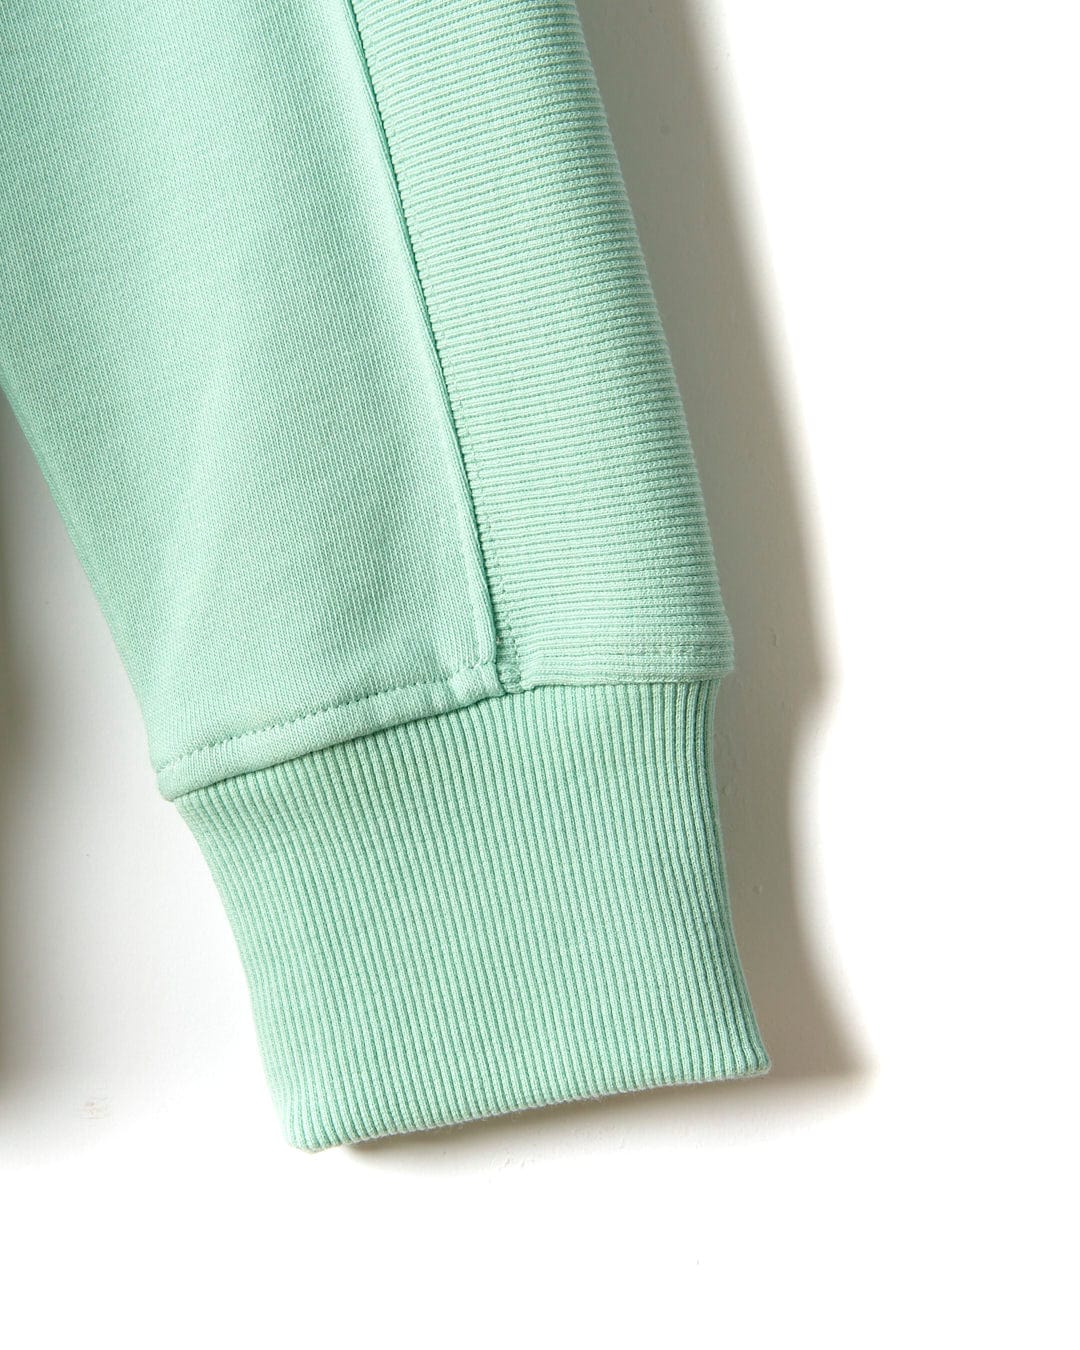 A close up of a Shelley - Womens Pop Hoodie - Light Green sweatshirt by Saltrock.